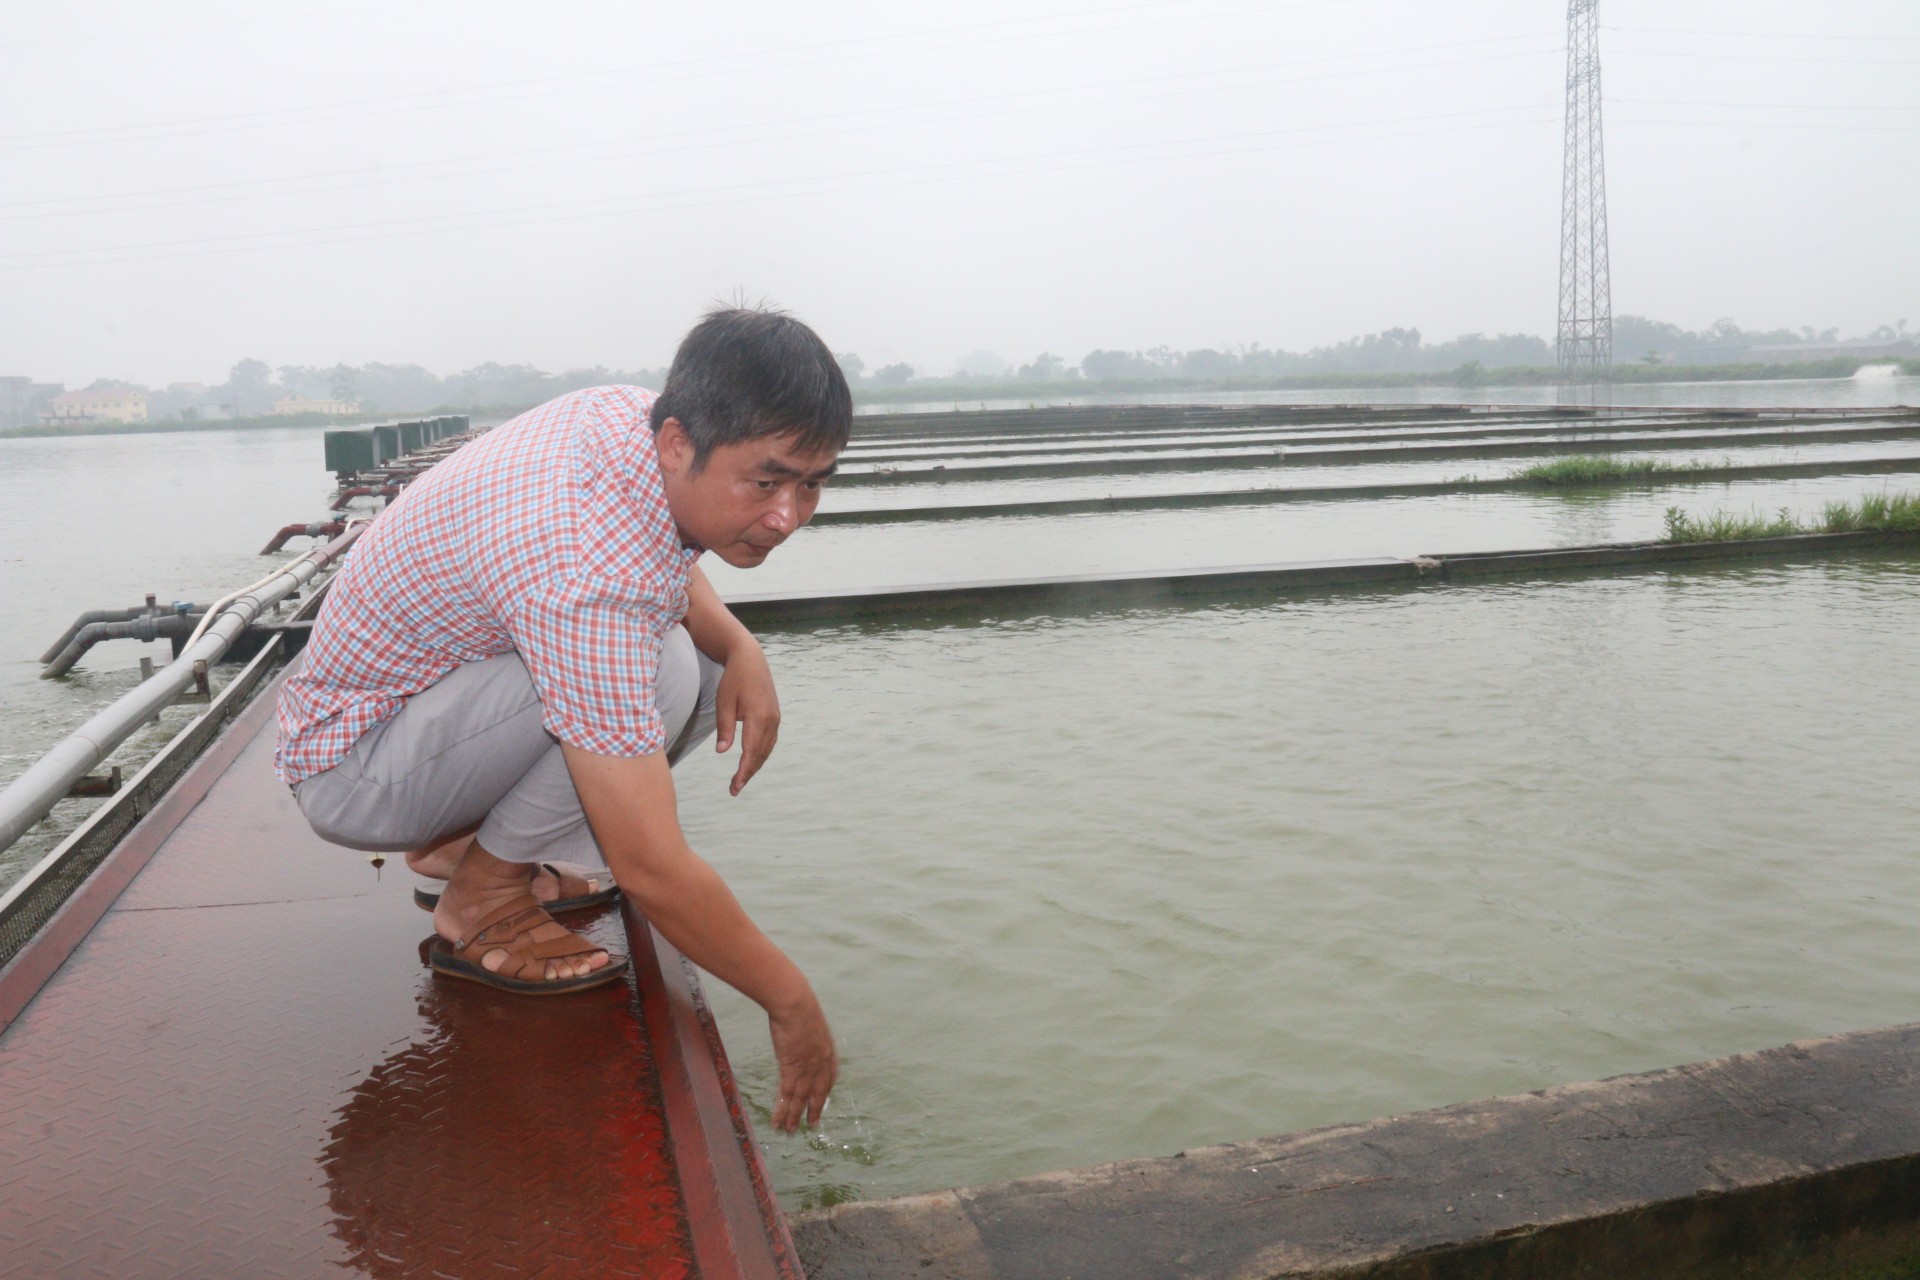 Hướng dẫn kỹ thuật nuôi cá theo hình thức sông trong ao  Báo Nam Định  điện tử